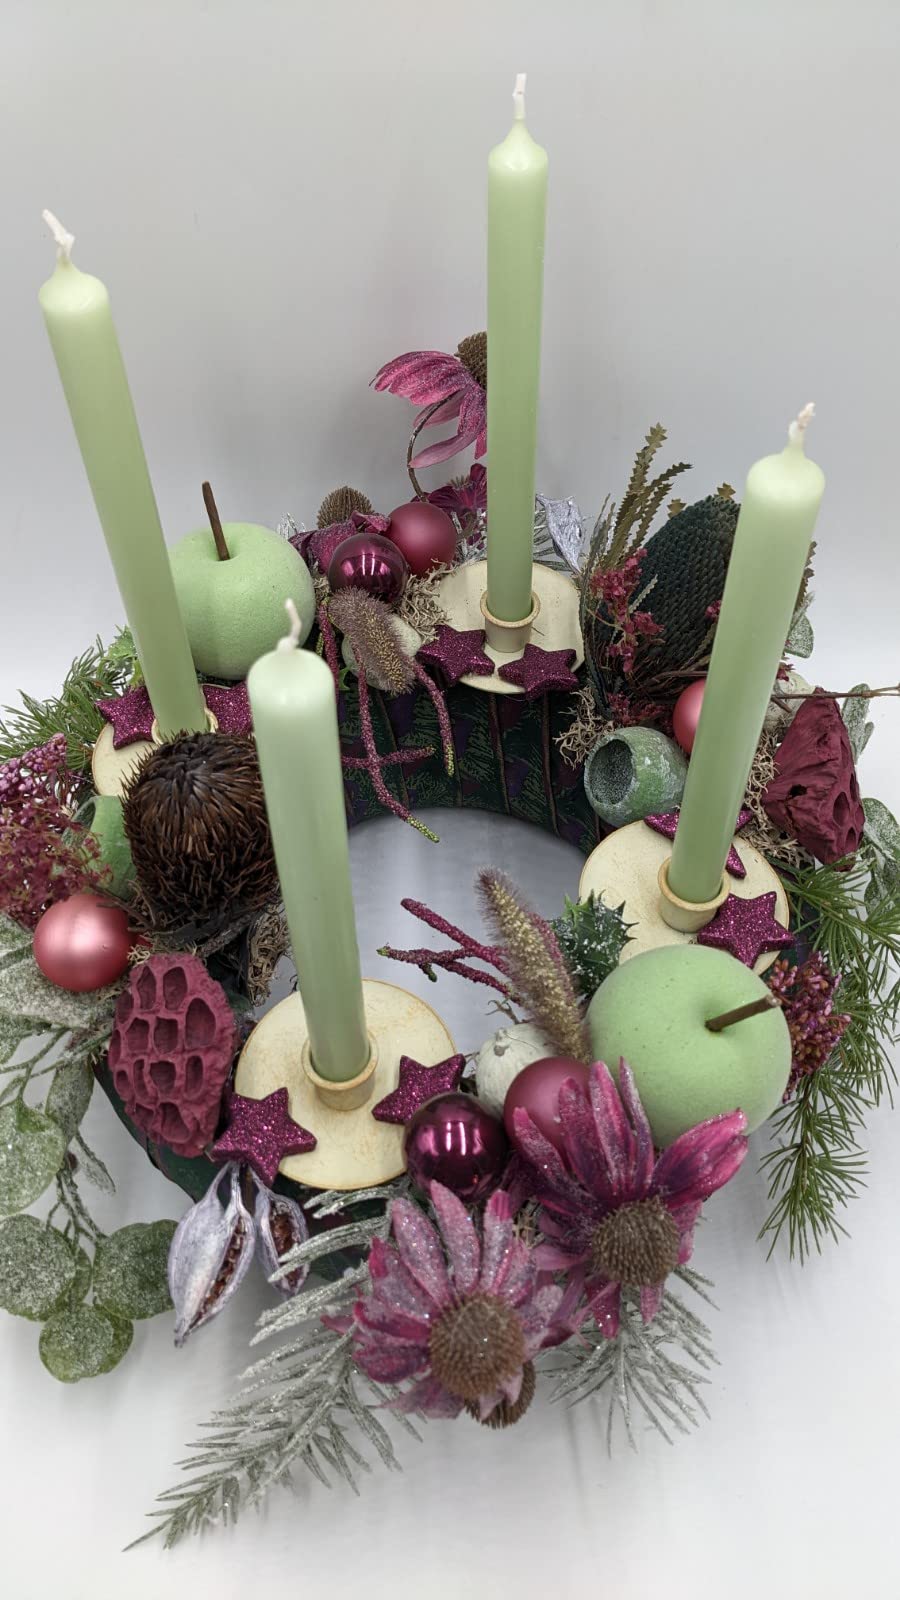 Weihnachtsgesteck Adventskranz Adventsgesteck Kugel Apfel Kerze Sonnenhut Beiwerk Gräser Tanne grün lila mint